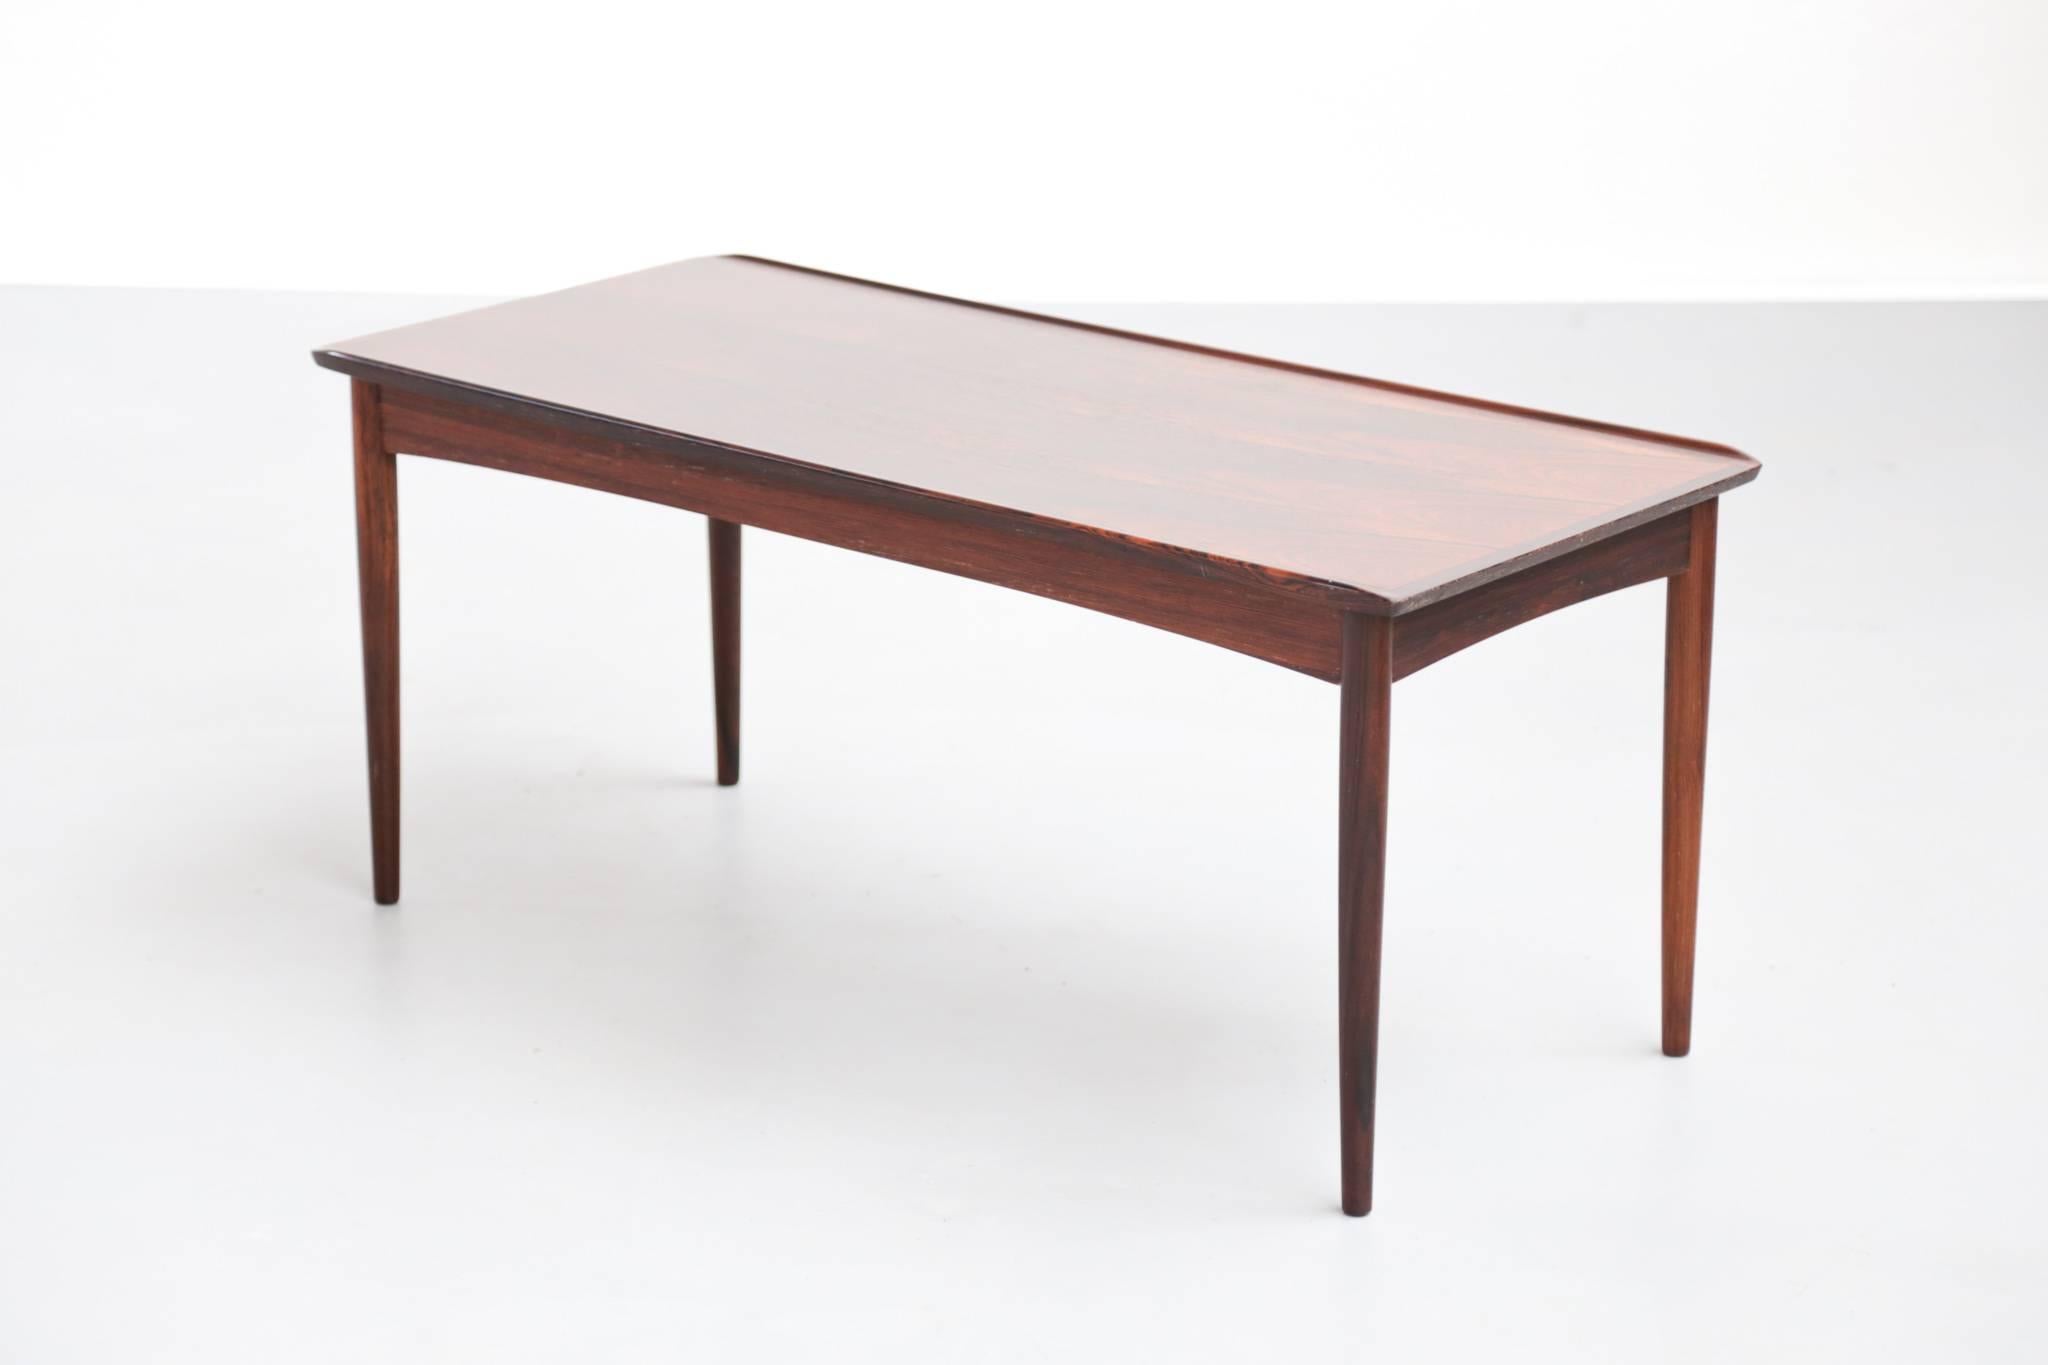 Danish Sofa Table in Rio Rosewood, Scandinavian Design 1